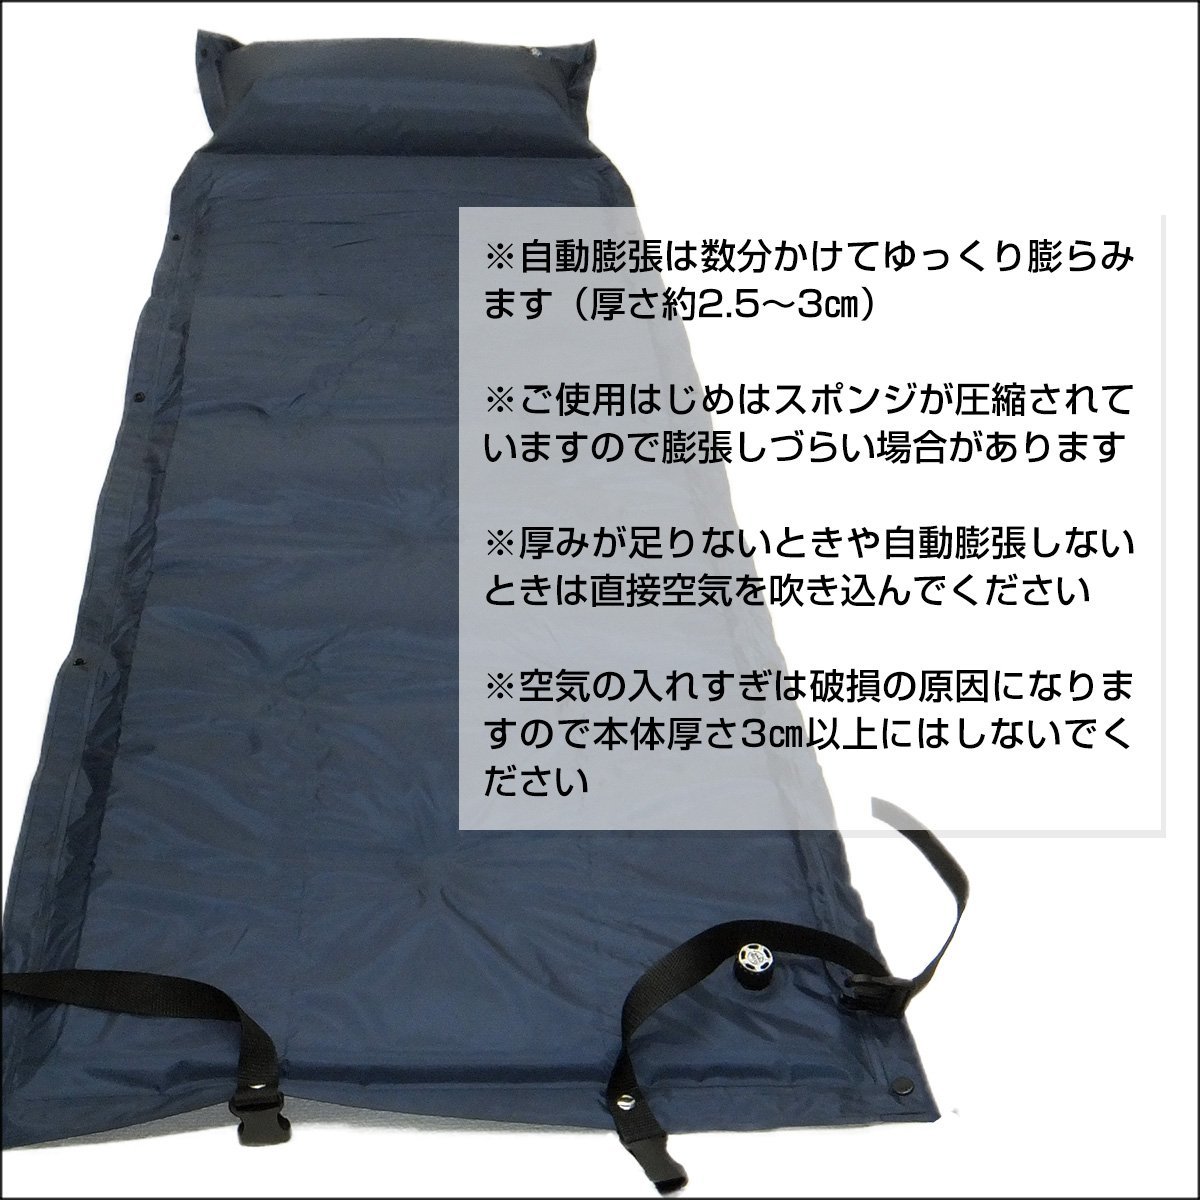  подушка имеется автоматика расширение воздушный коврик воздушный матрац compact место хранения объединенный возможно /20